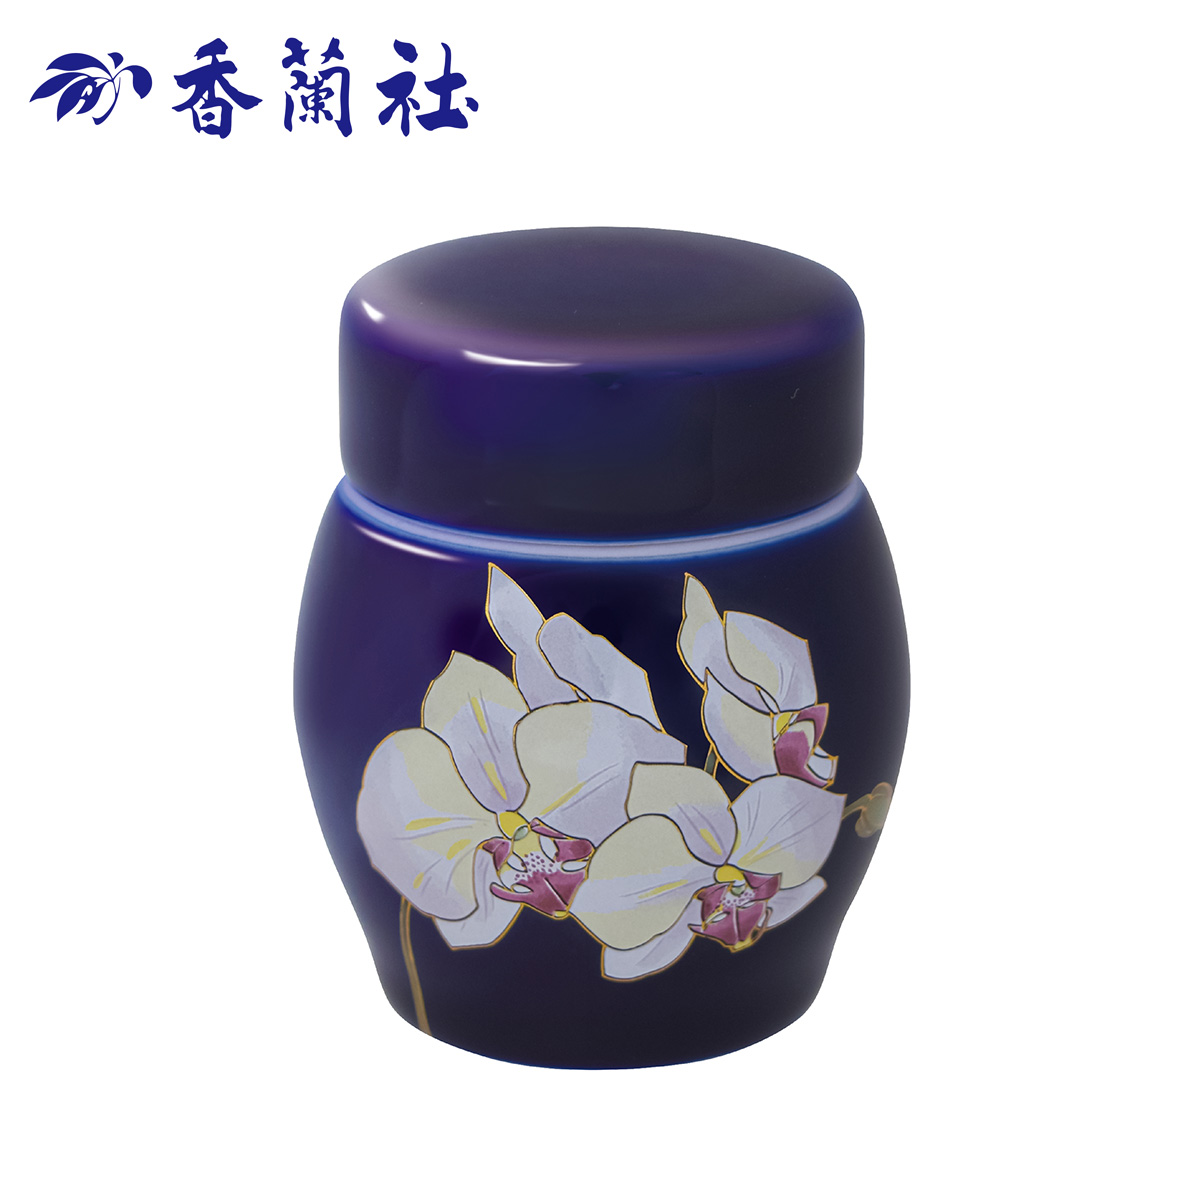 胡蝶蘭とロイヤルブルーの組み合わせが美しいミニ骨壷　香蘭社の「ルリ胡蝶蘭」です